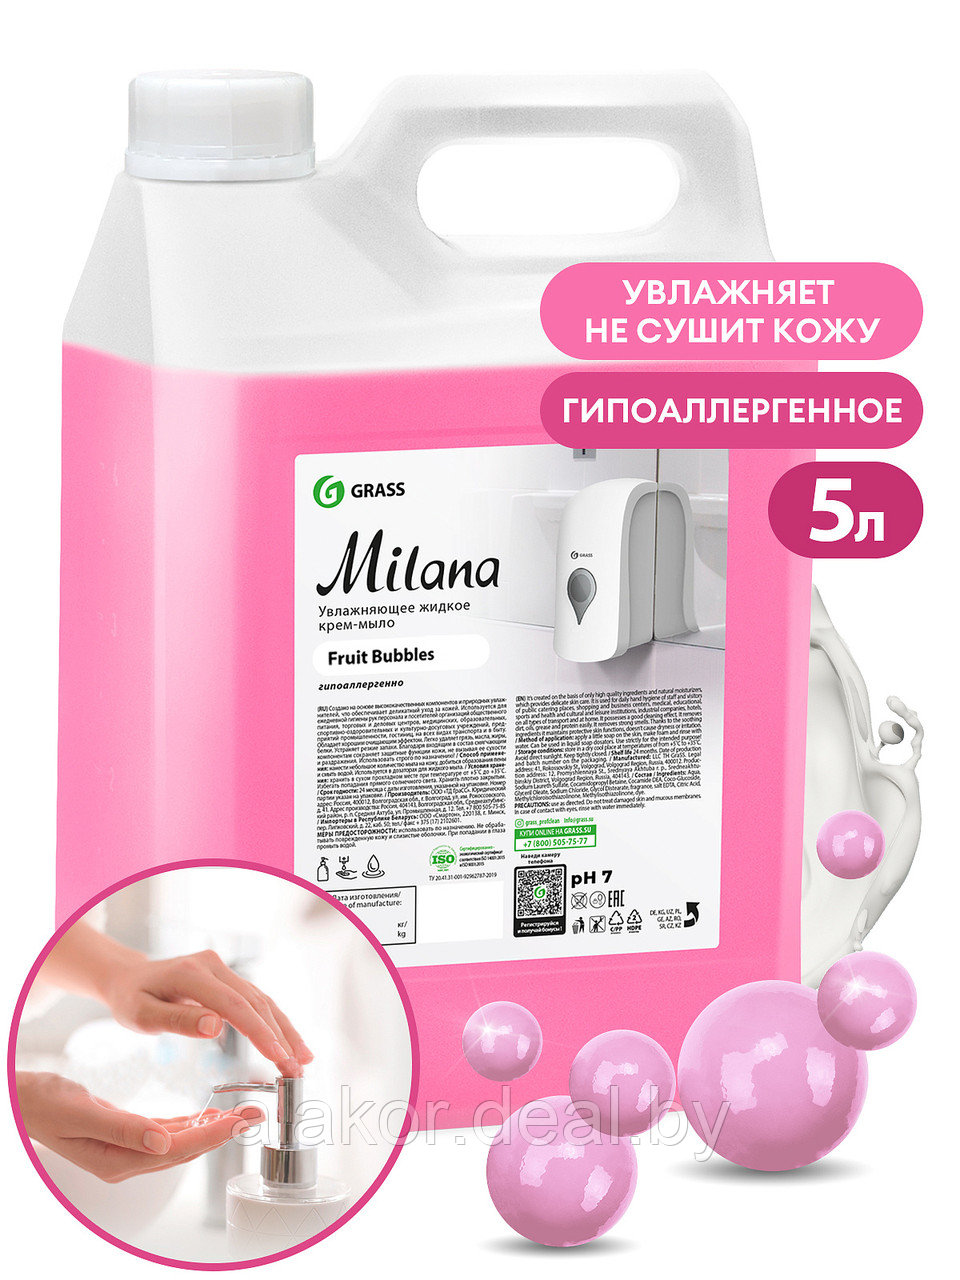 Мыло жидкое Milana, 5000гр., fruit bubbles